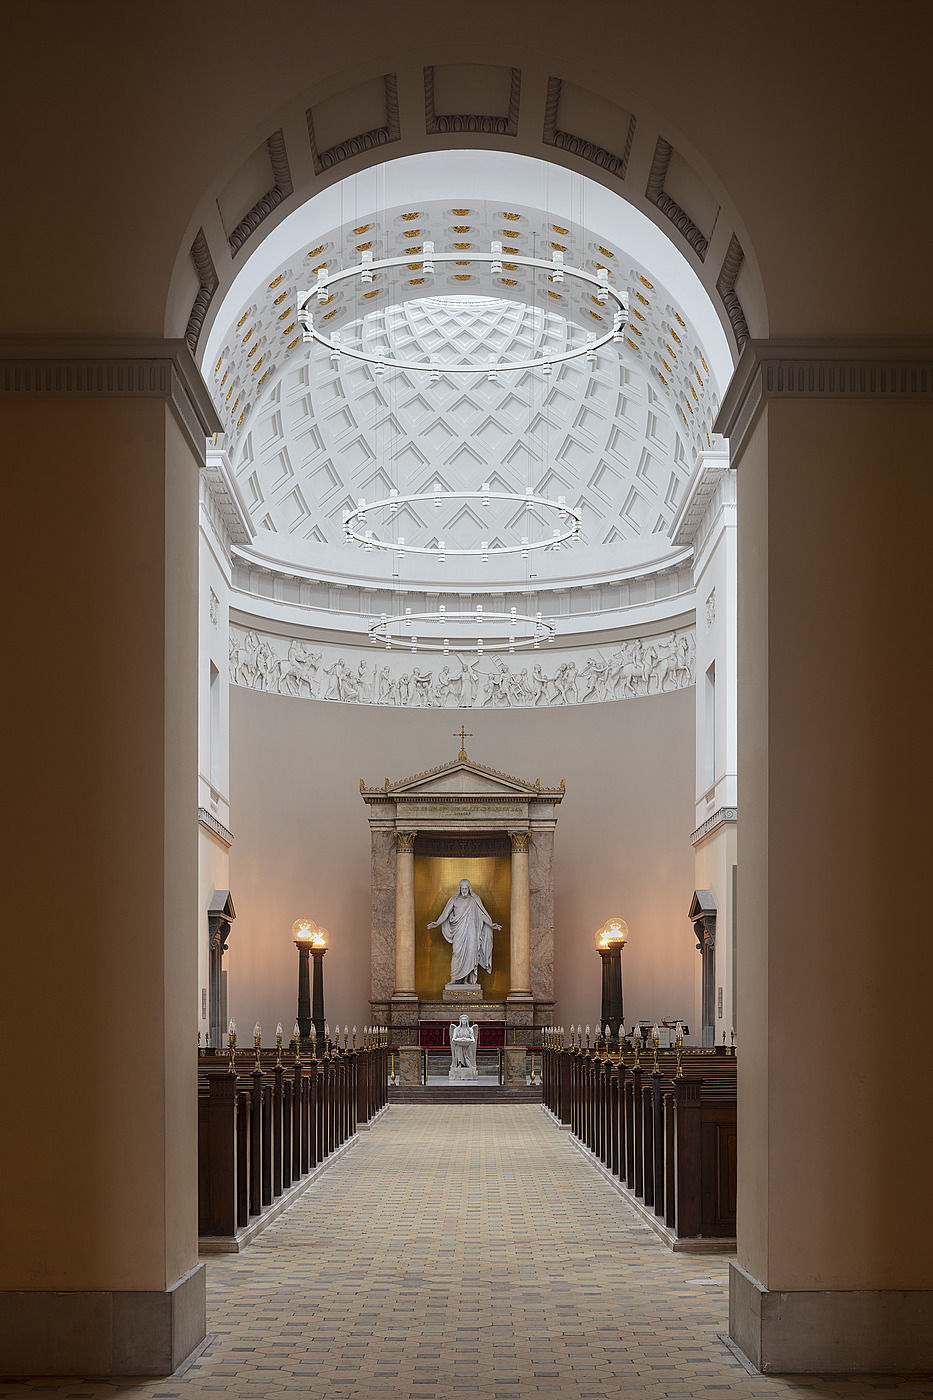 C.F. Hansen: Vor Frue Kirke, København, 1810-1826